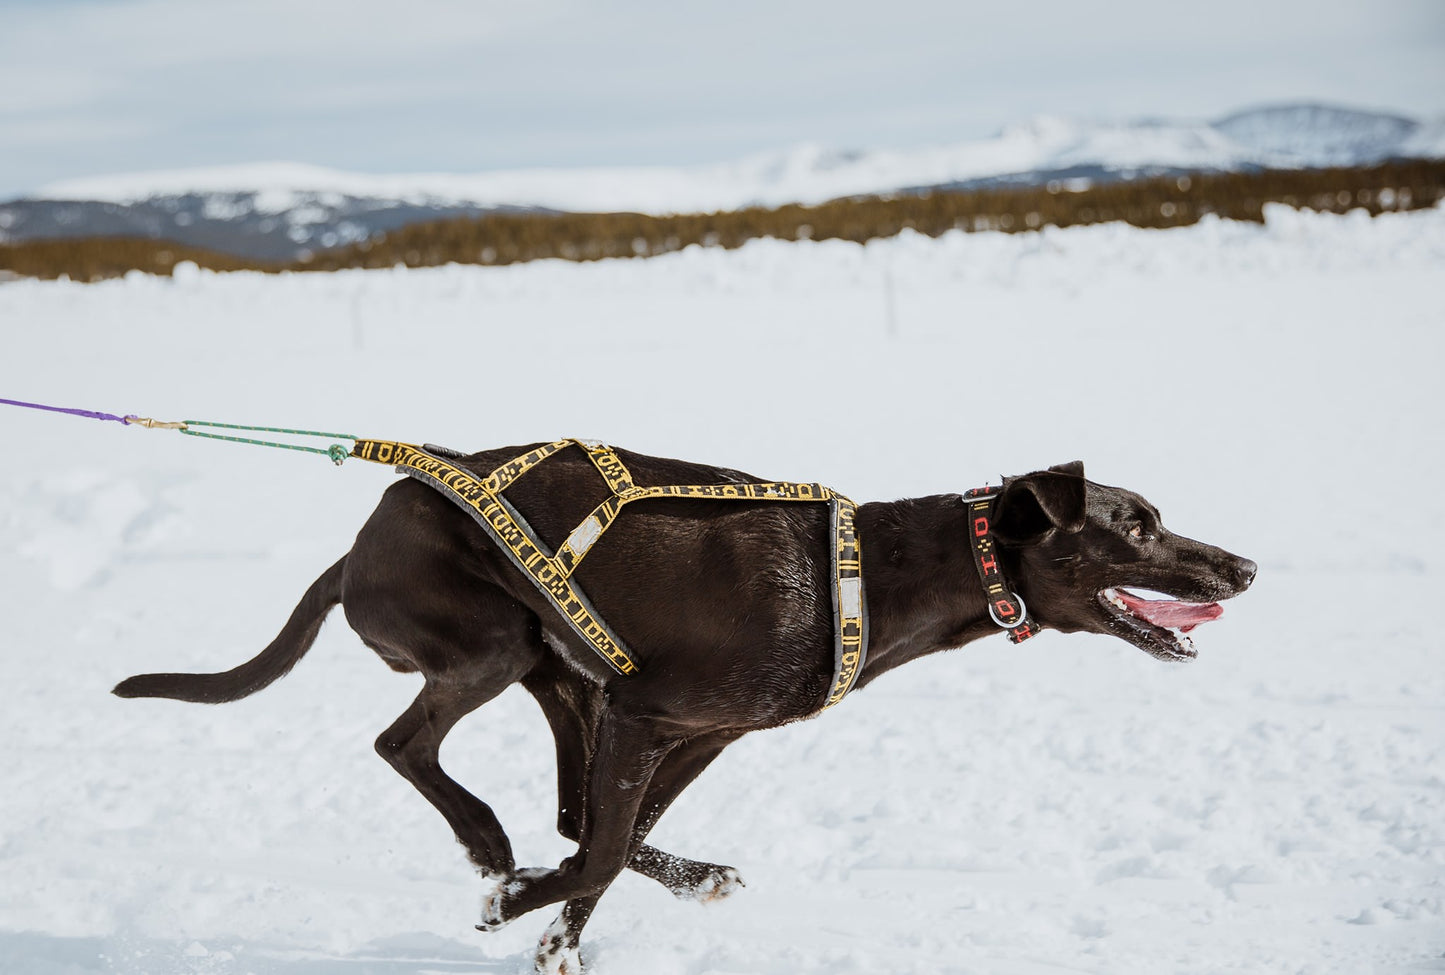 Howling Dog Alaska Light weight harness